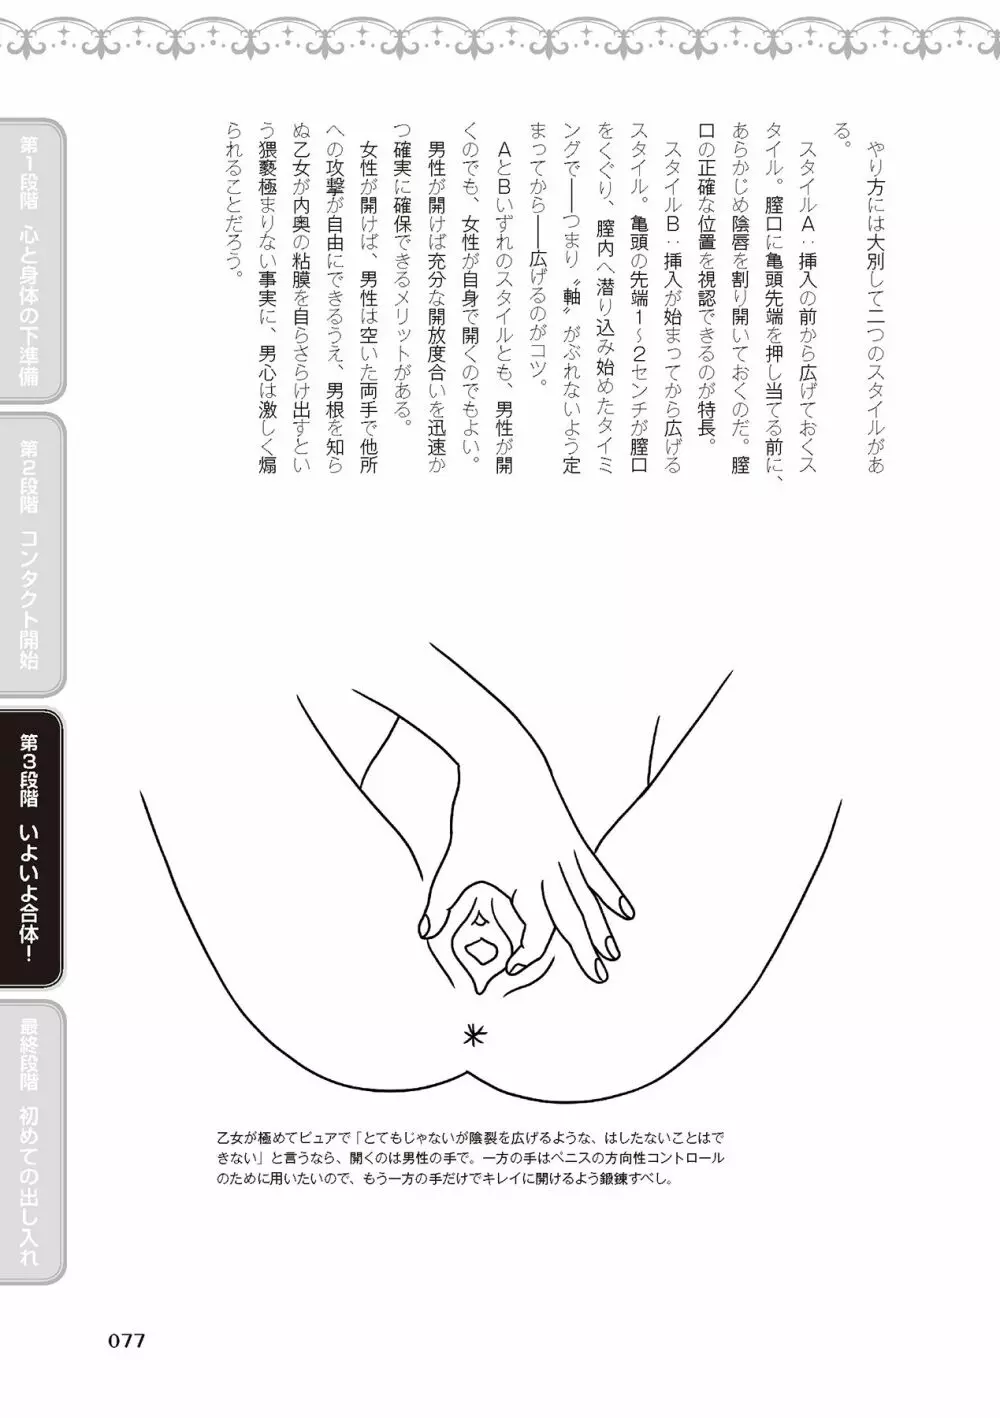 処女喪失・ロストヴァージンSEX完全マニュアル イラスト版……初エッチ 79ページ